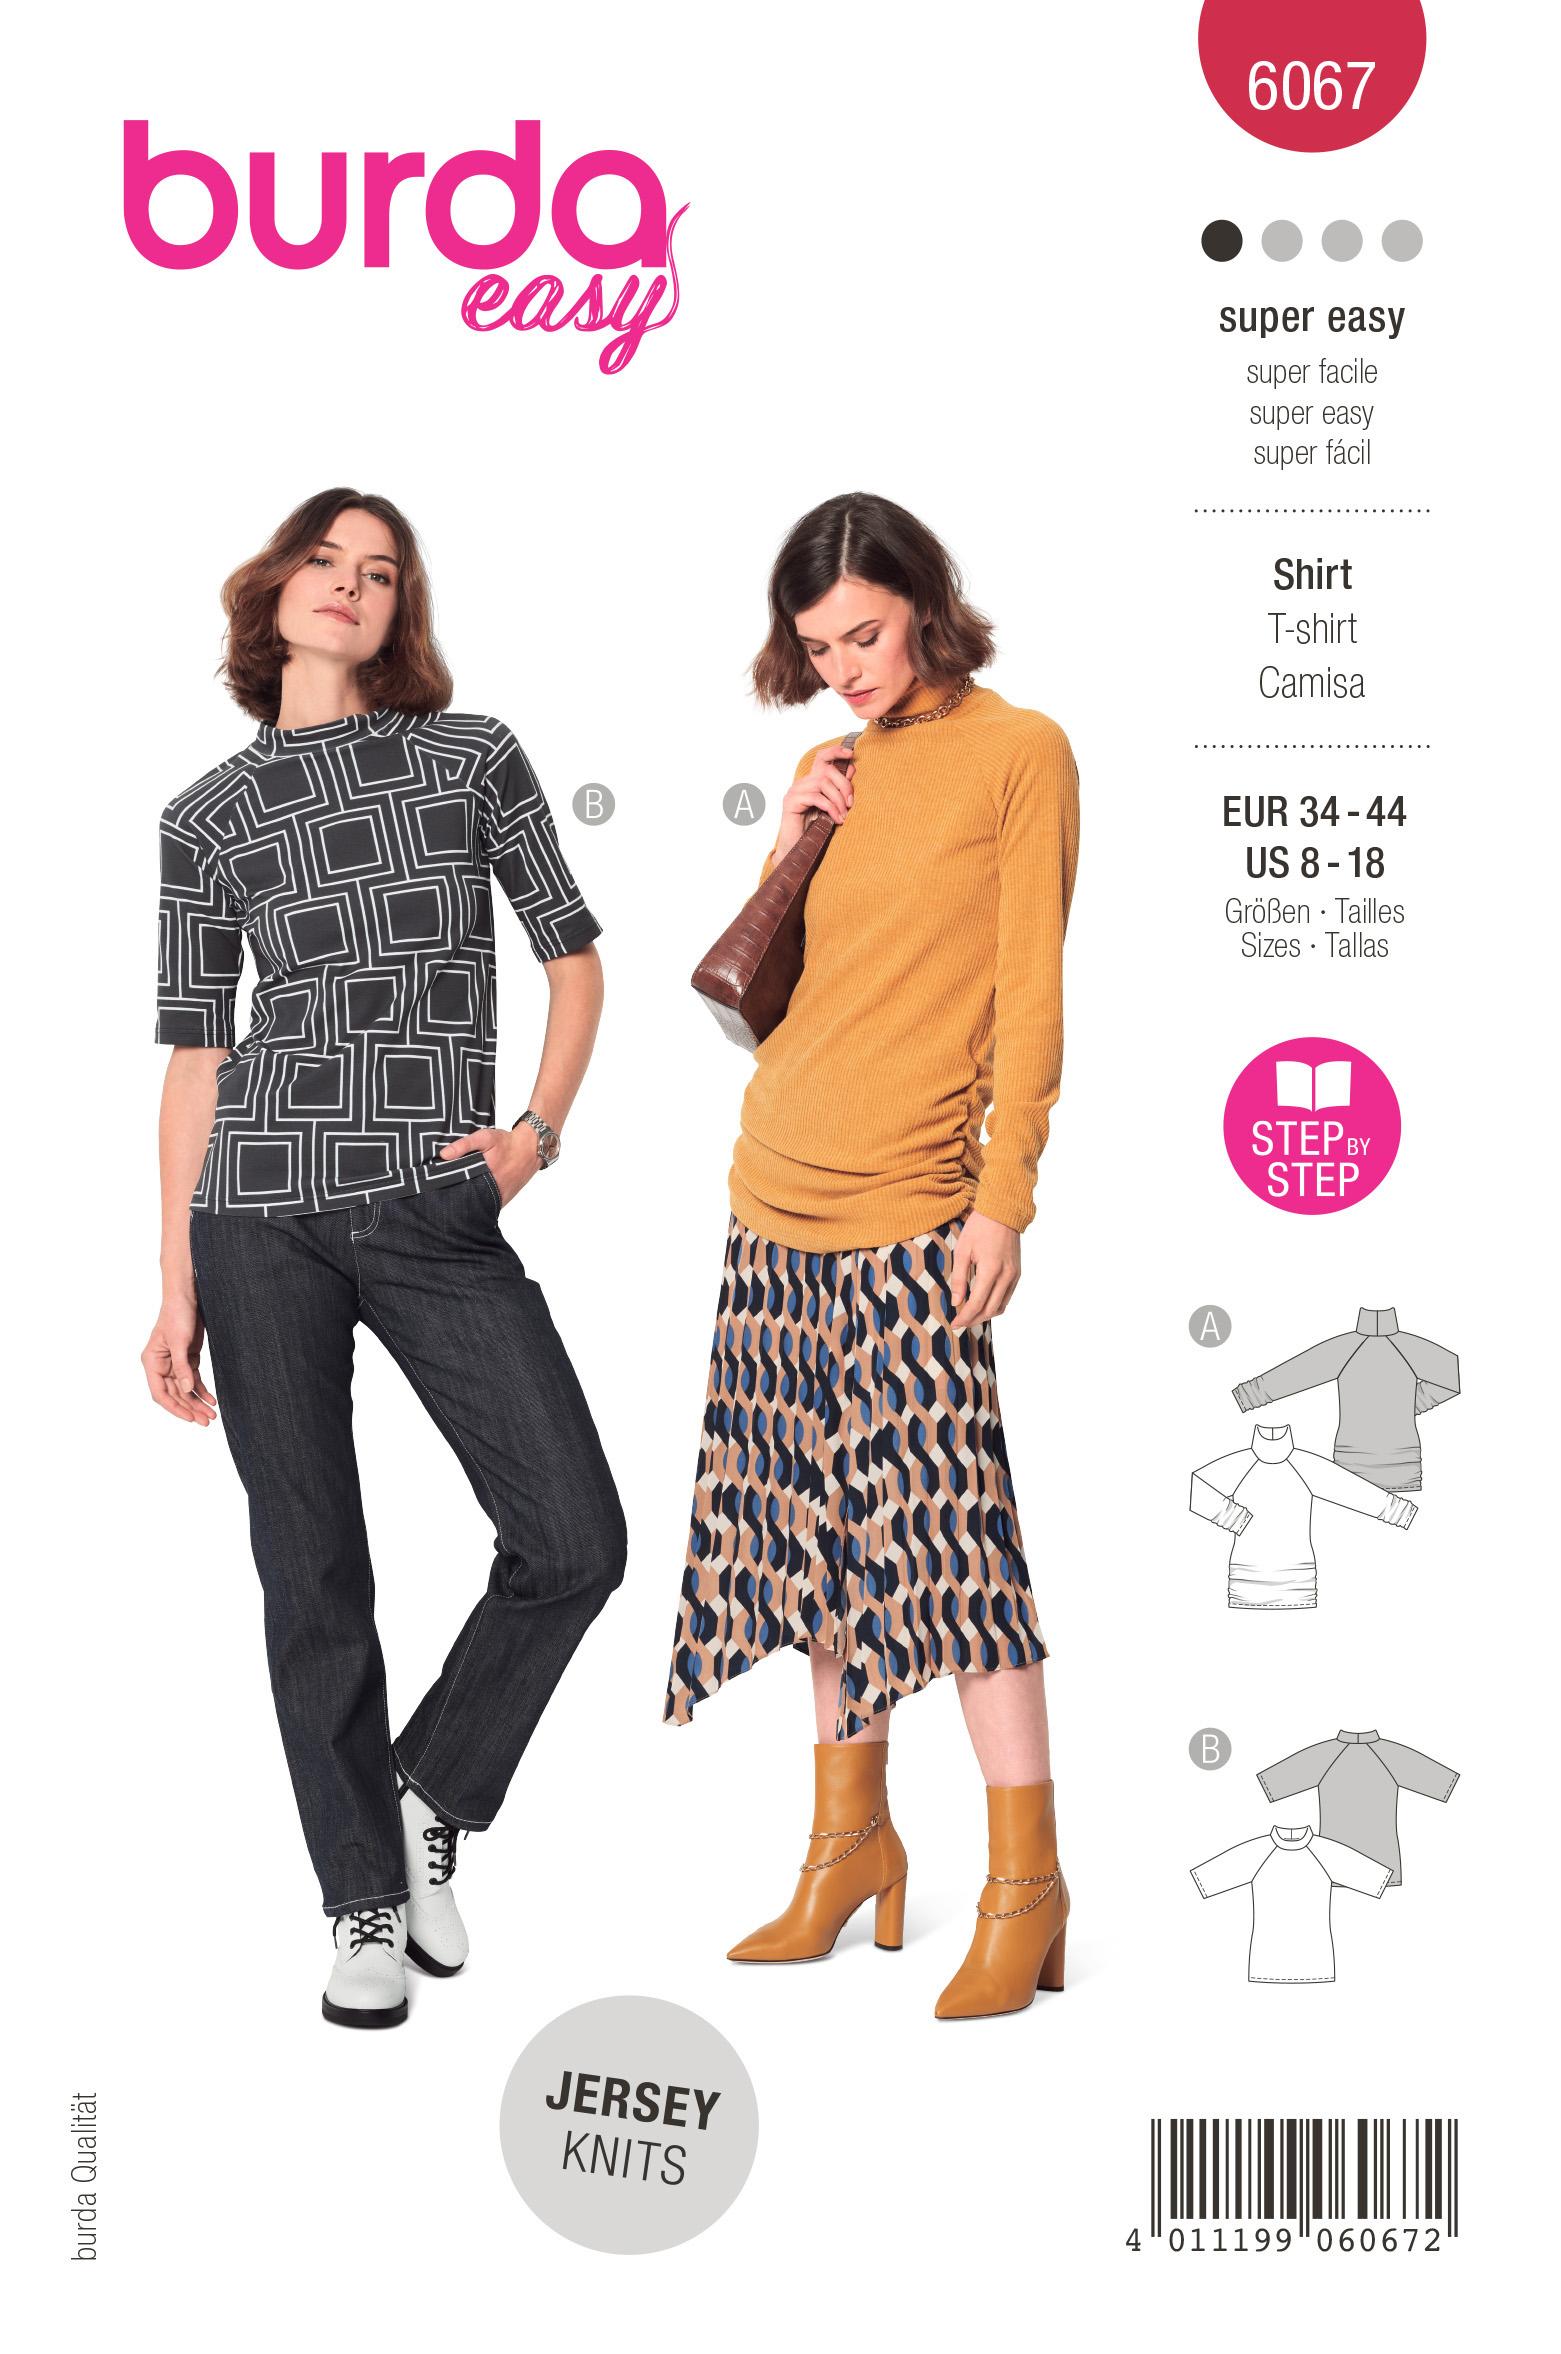 Burda Style Pattern 6067 Misses' Top with Raglan Sleeves